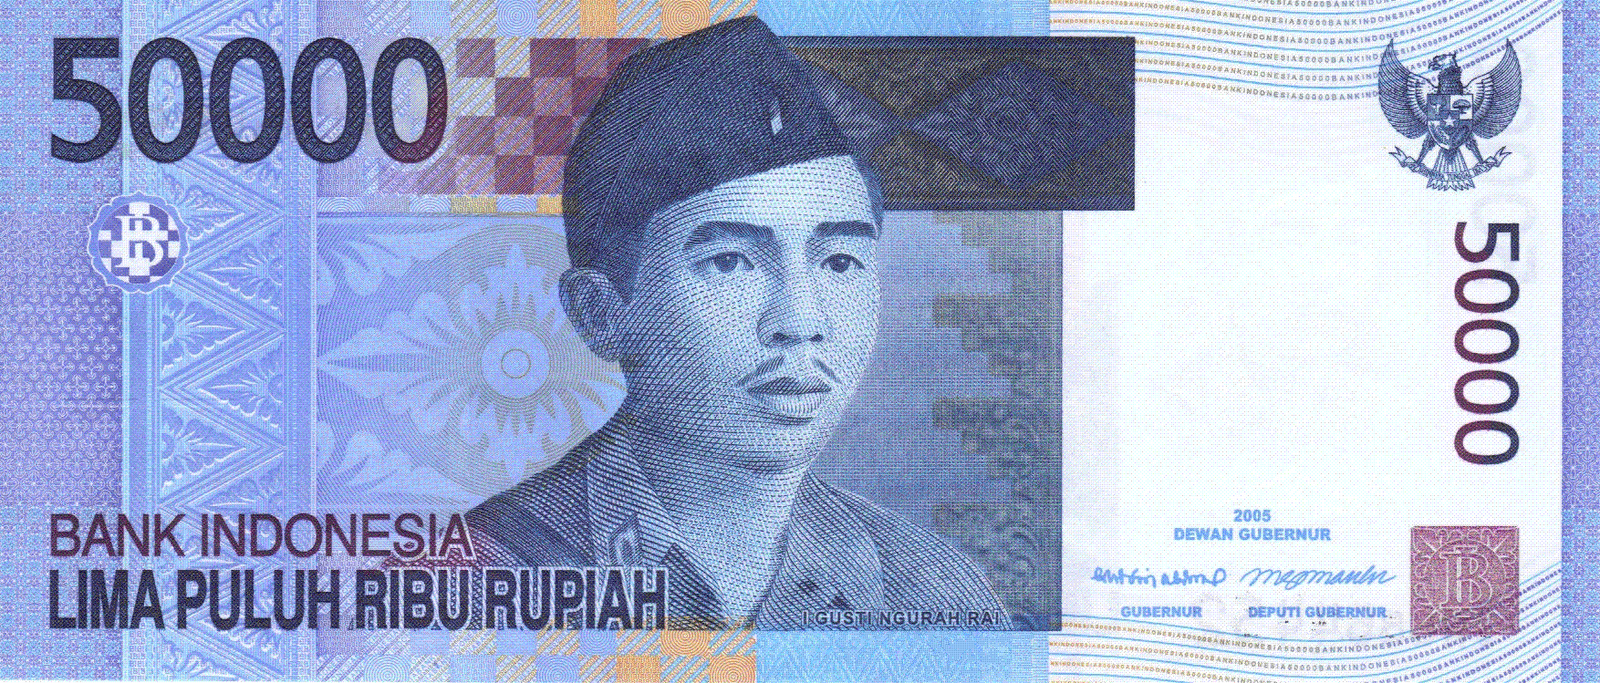 Rp 50000 Tahun 2005 Galeri Uang Rupiah Indonesia